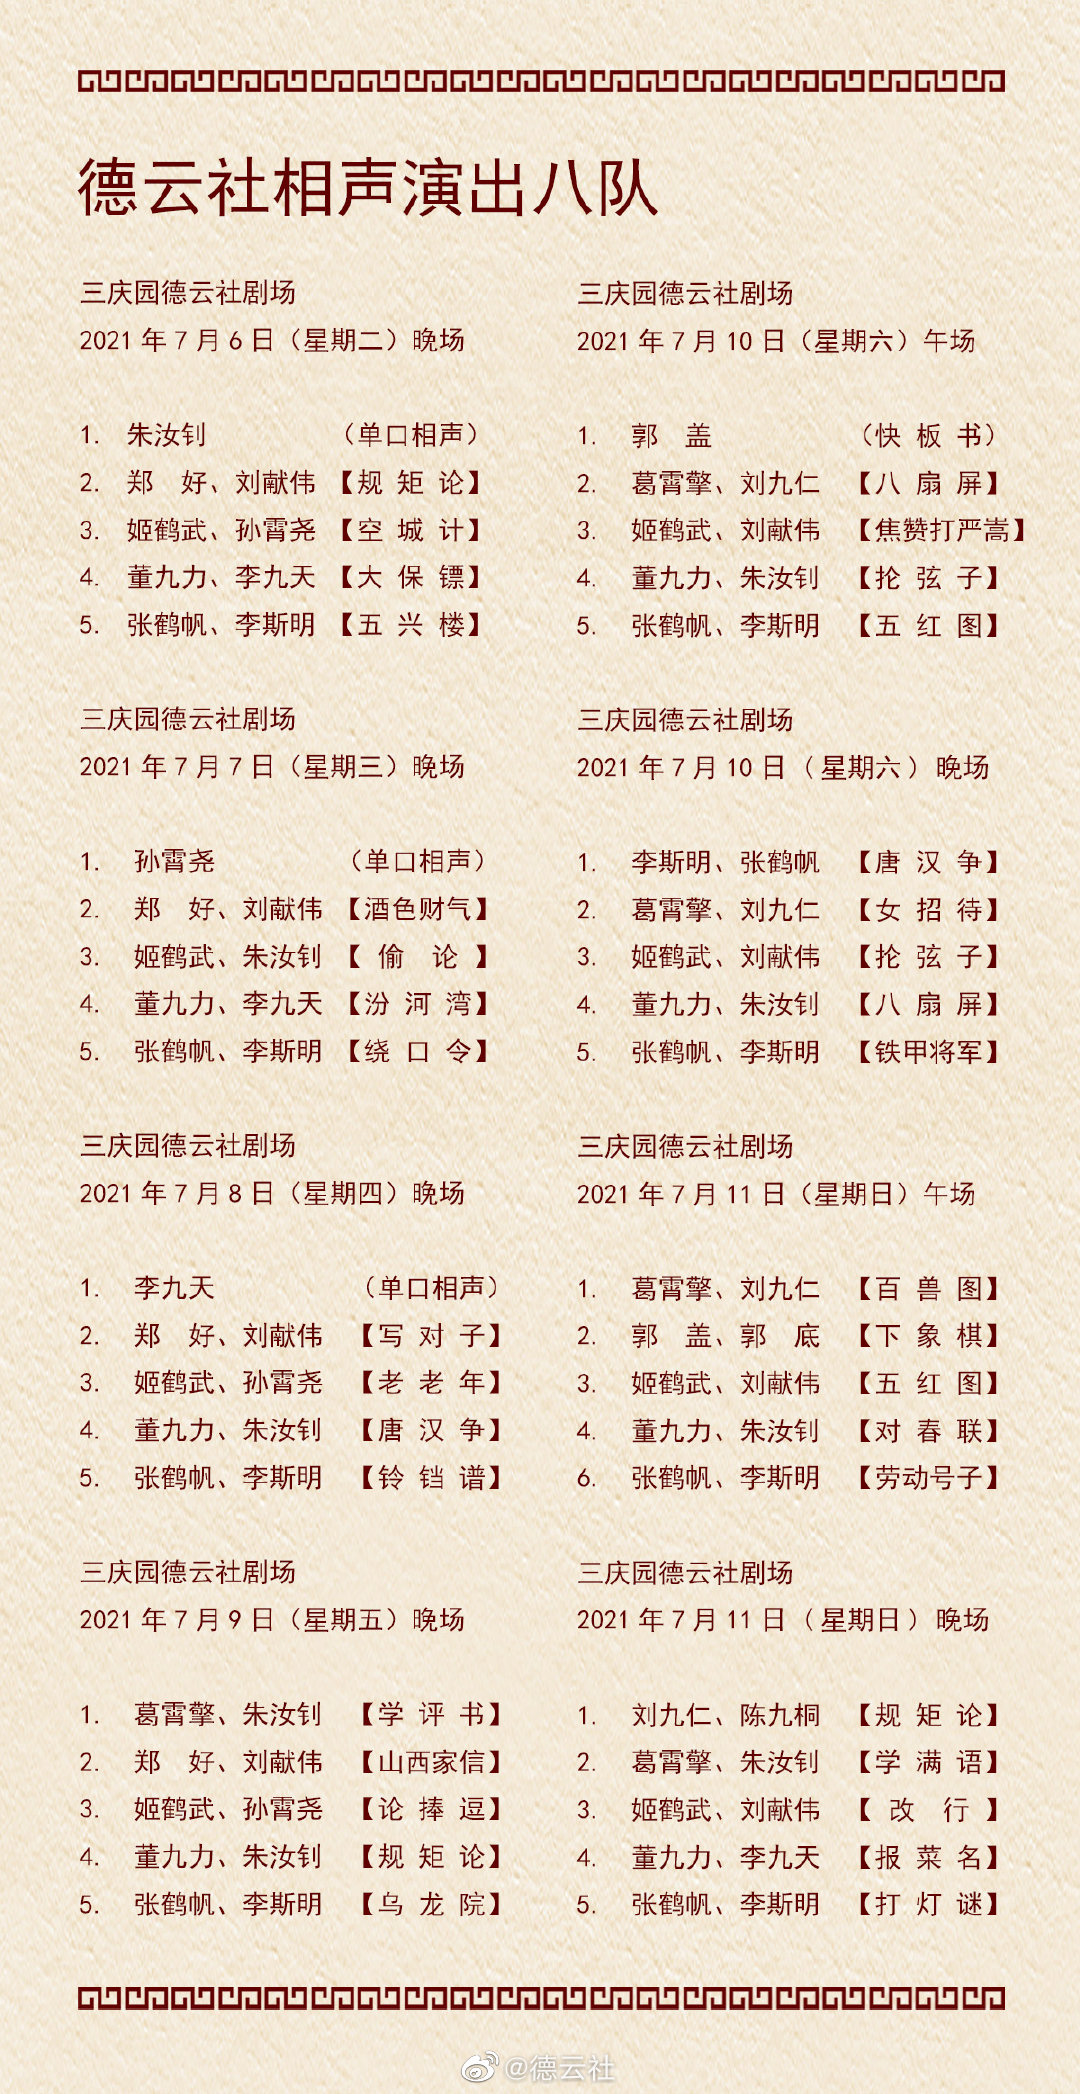 德云社演出节目单2021年7月5日-7月11日 德云社演出节目单2021年7月